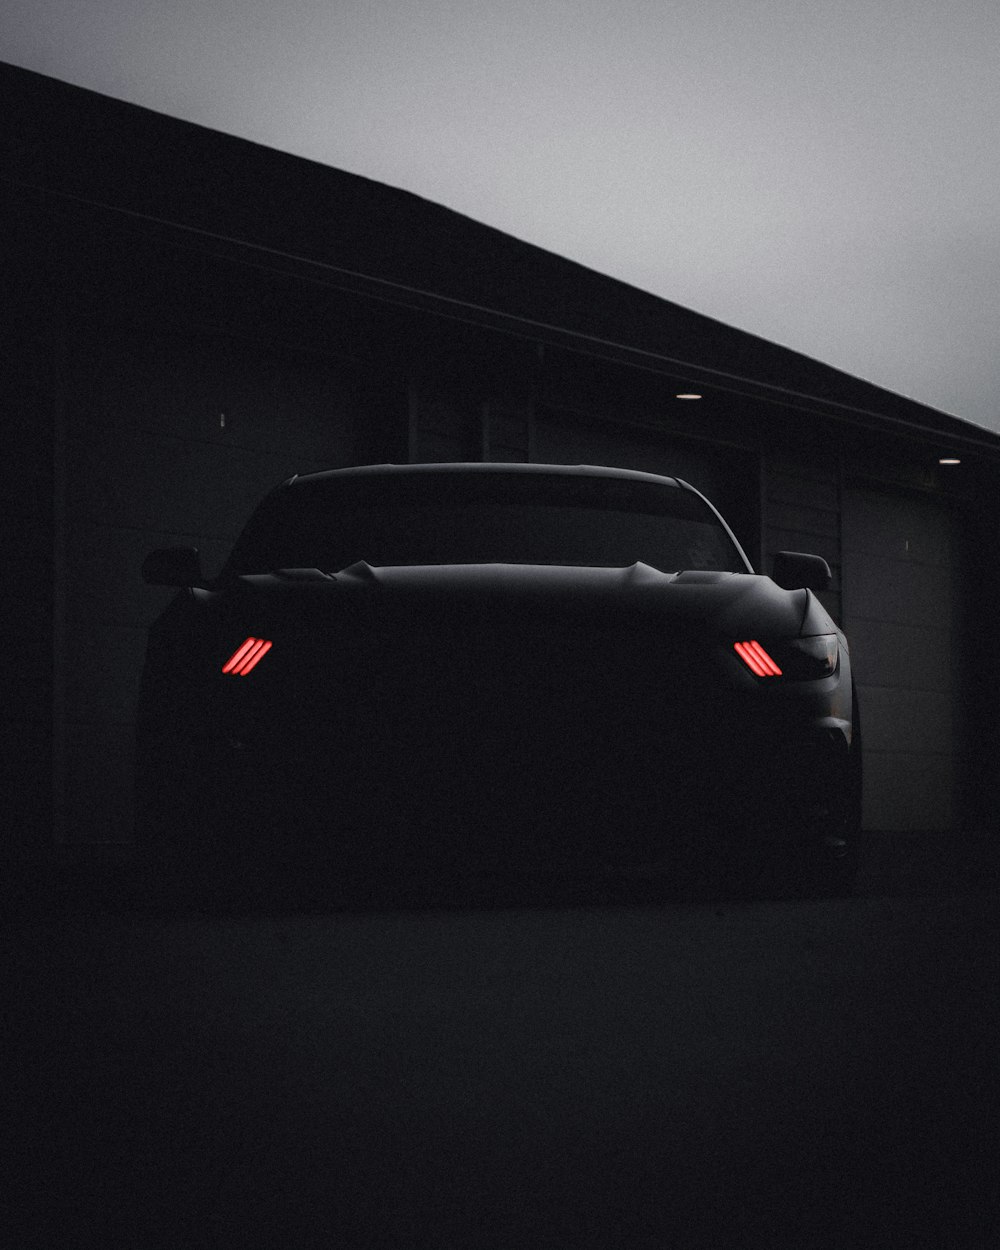 Schwarzes Auto in einem dunklen Raum